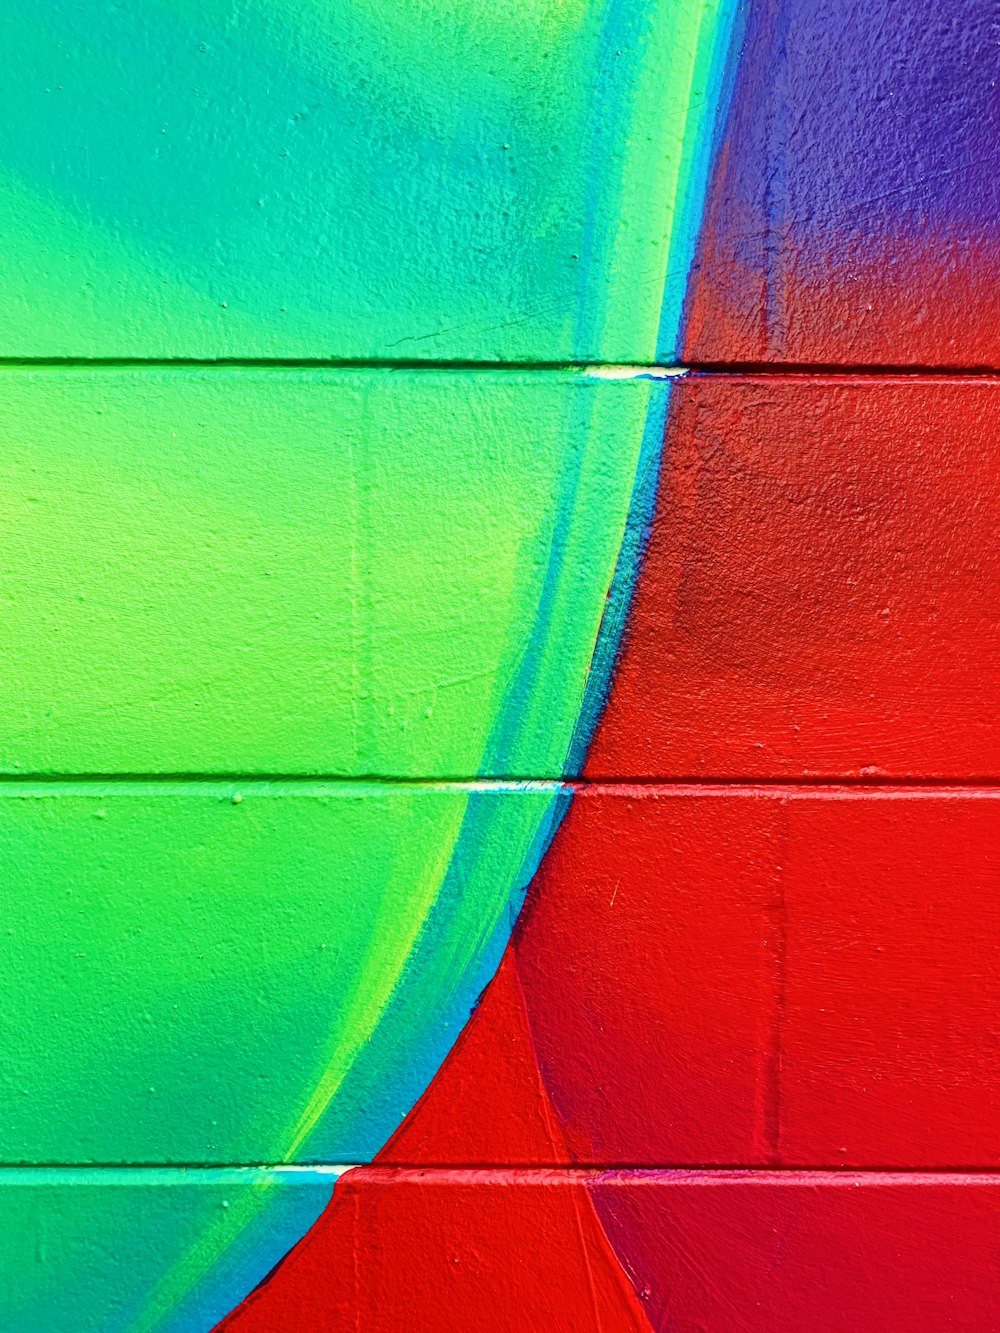 Mur de briques peintes en vert, bleu et rouge